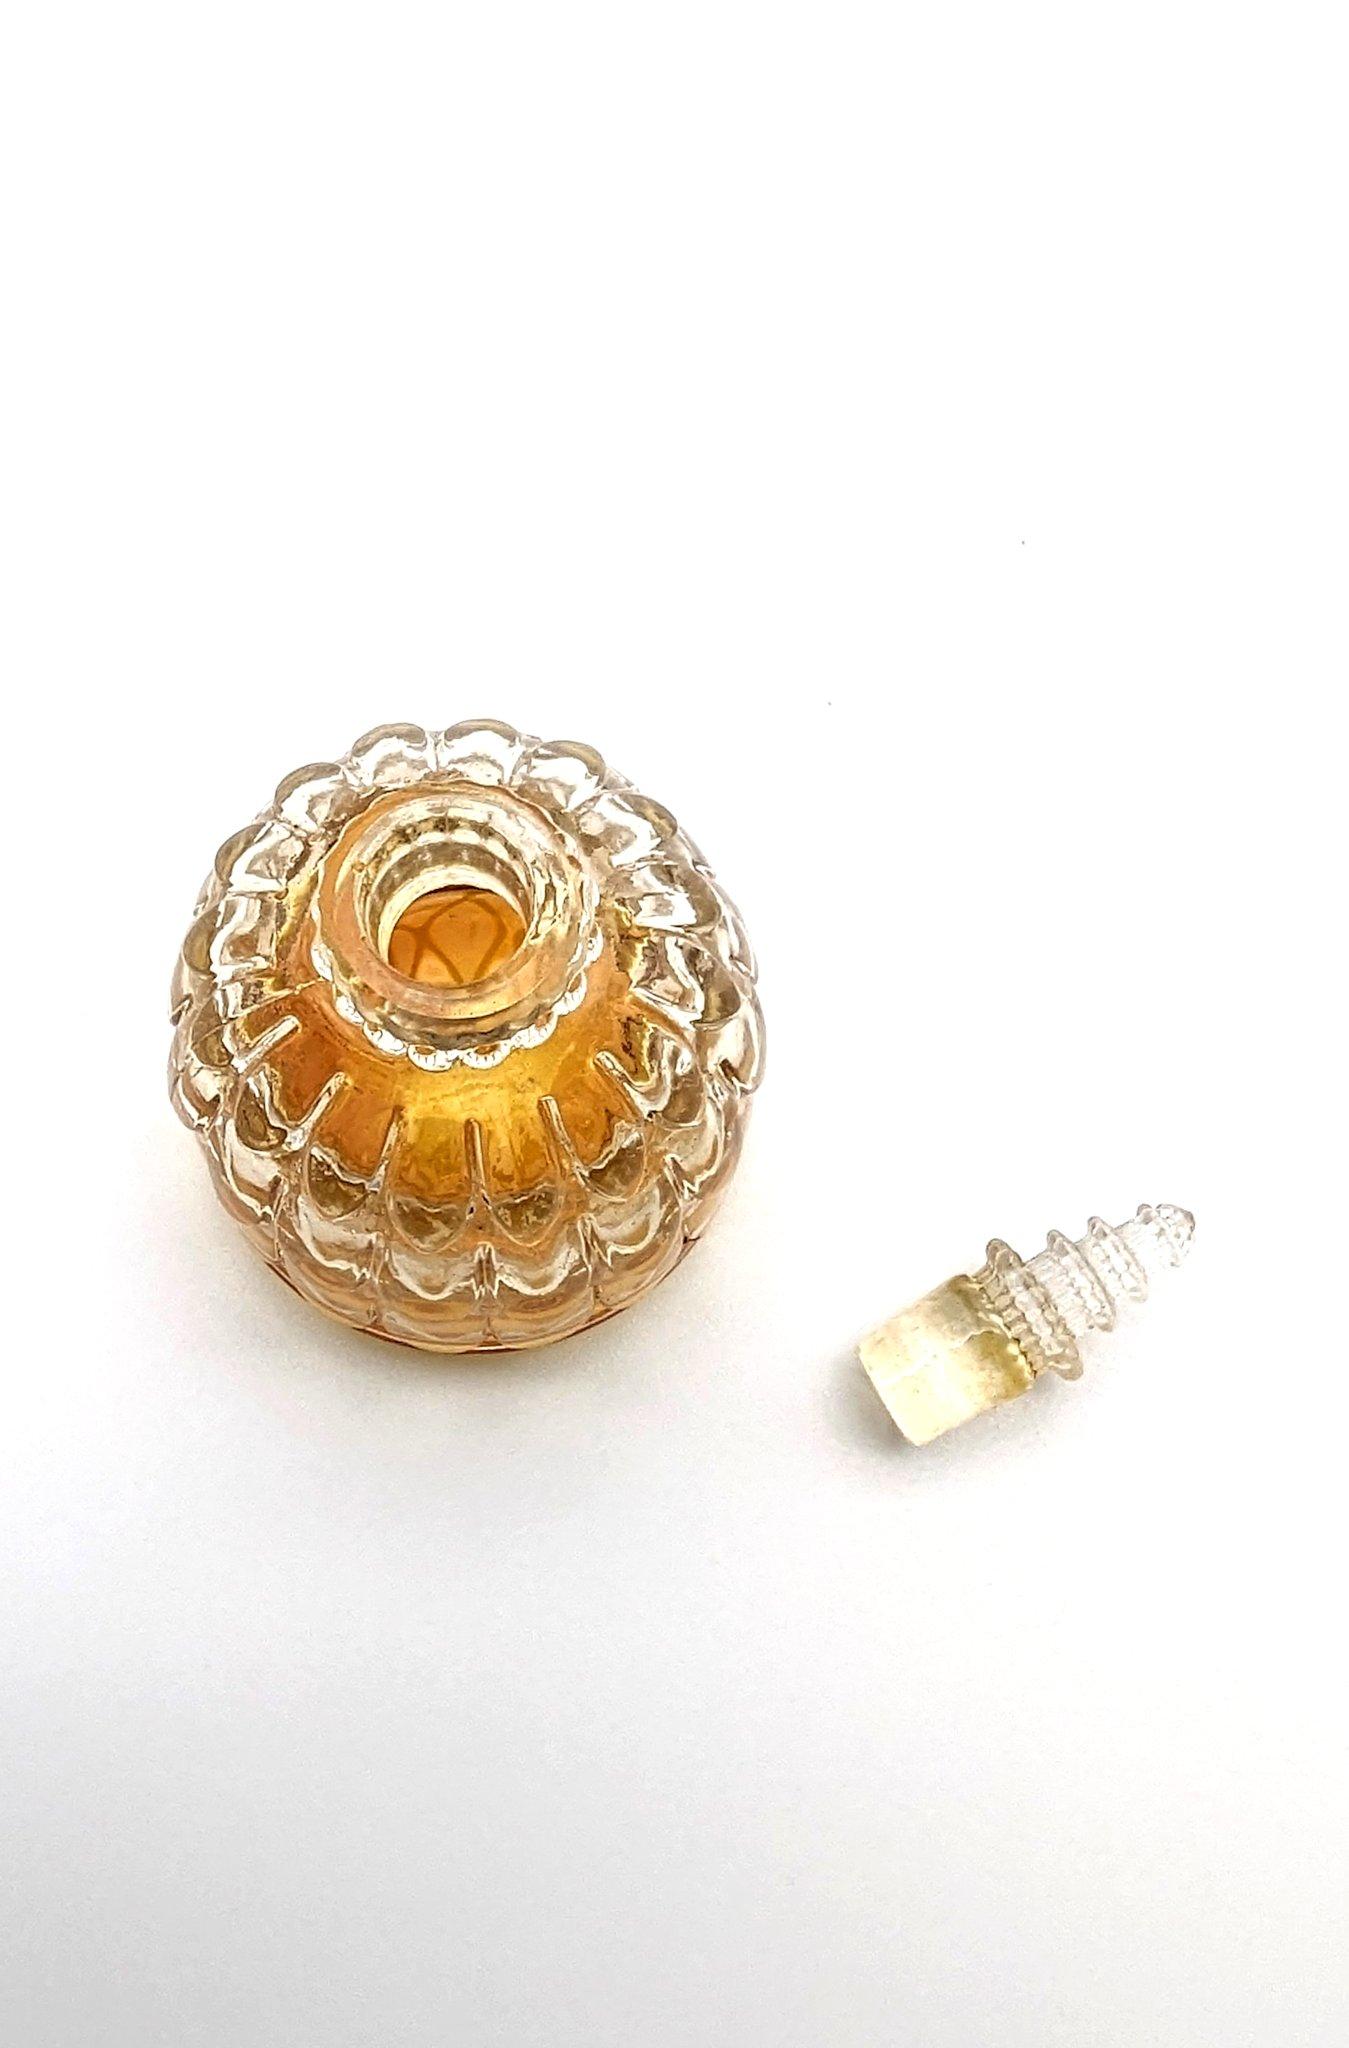 Pressed René Lalique glass art deco perfume bottle 